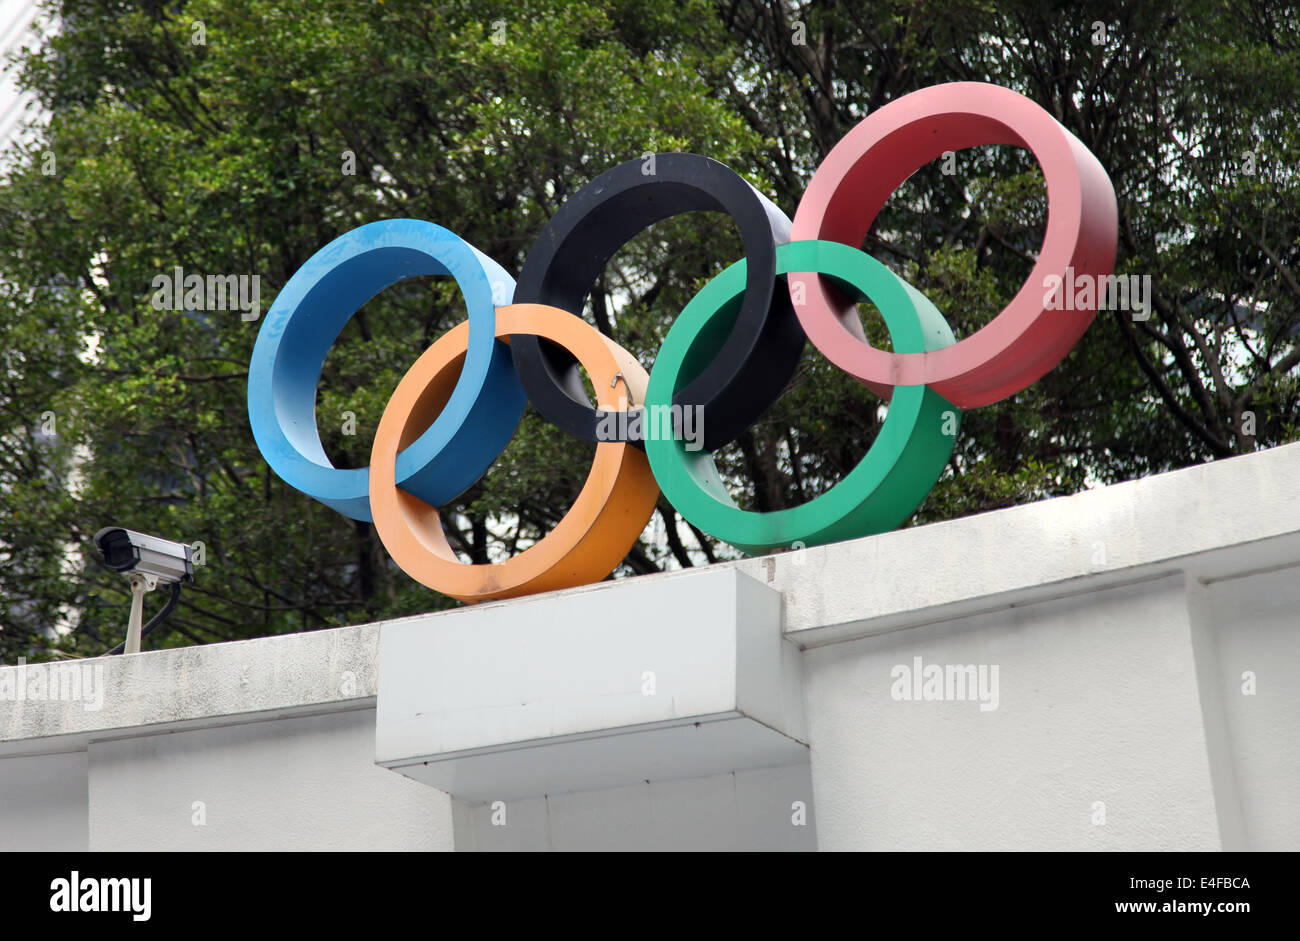 C'est une photo de la logo olympique, les cinq cercles colorés en bleu orange noir vert et rouge Banque D'Images